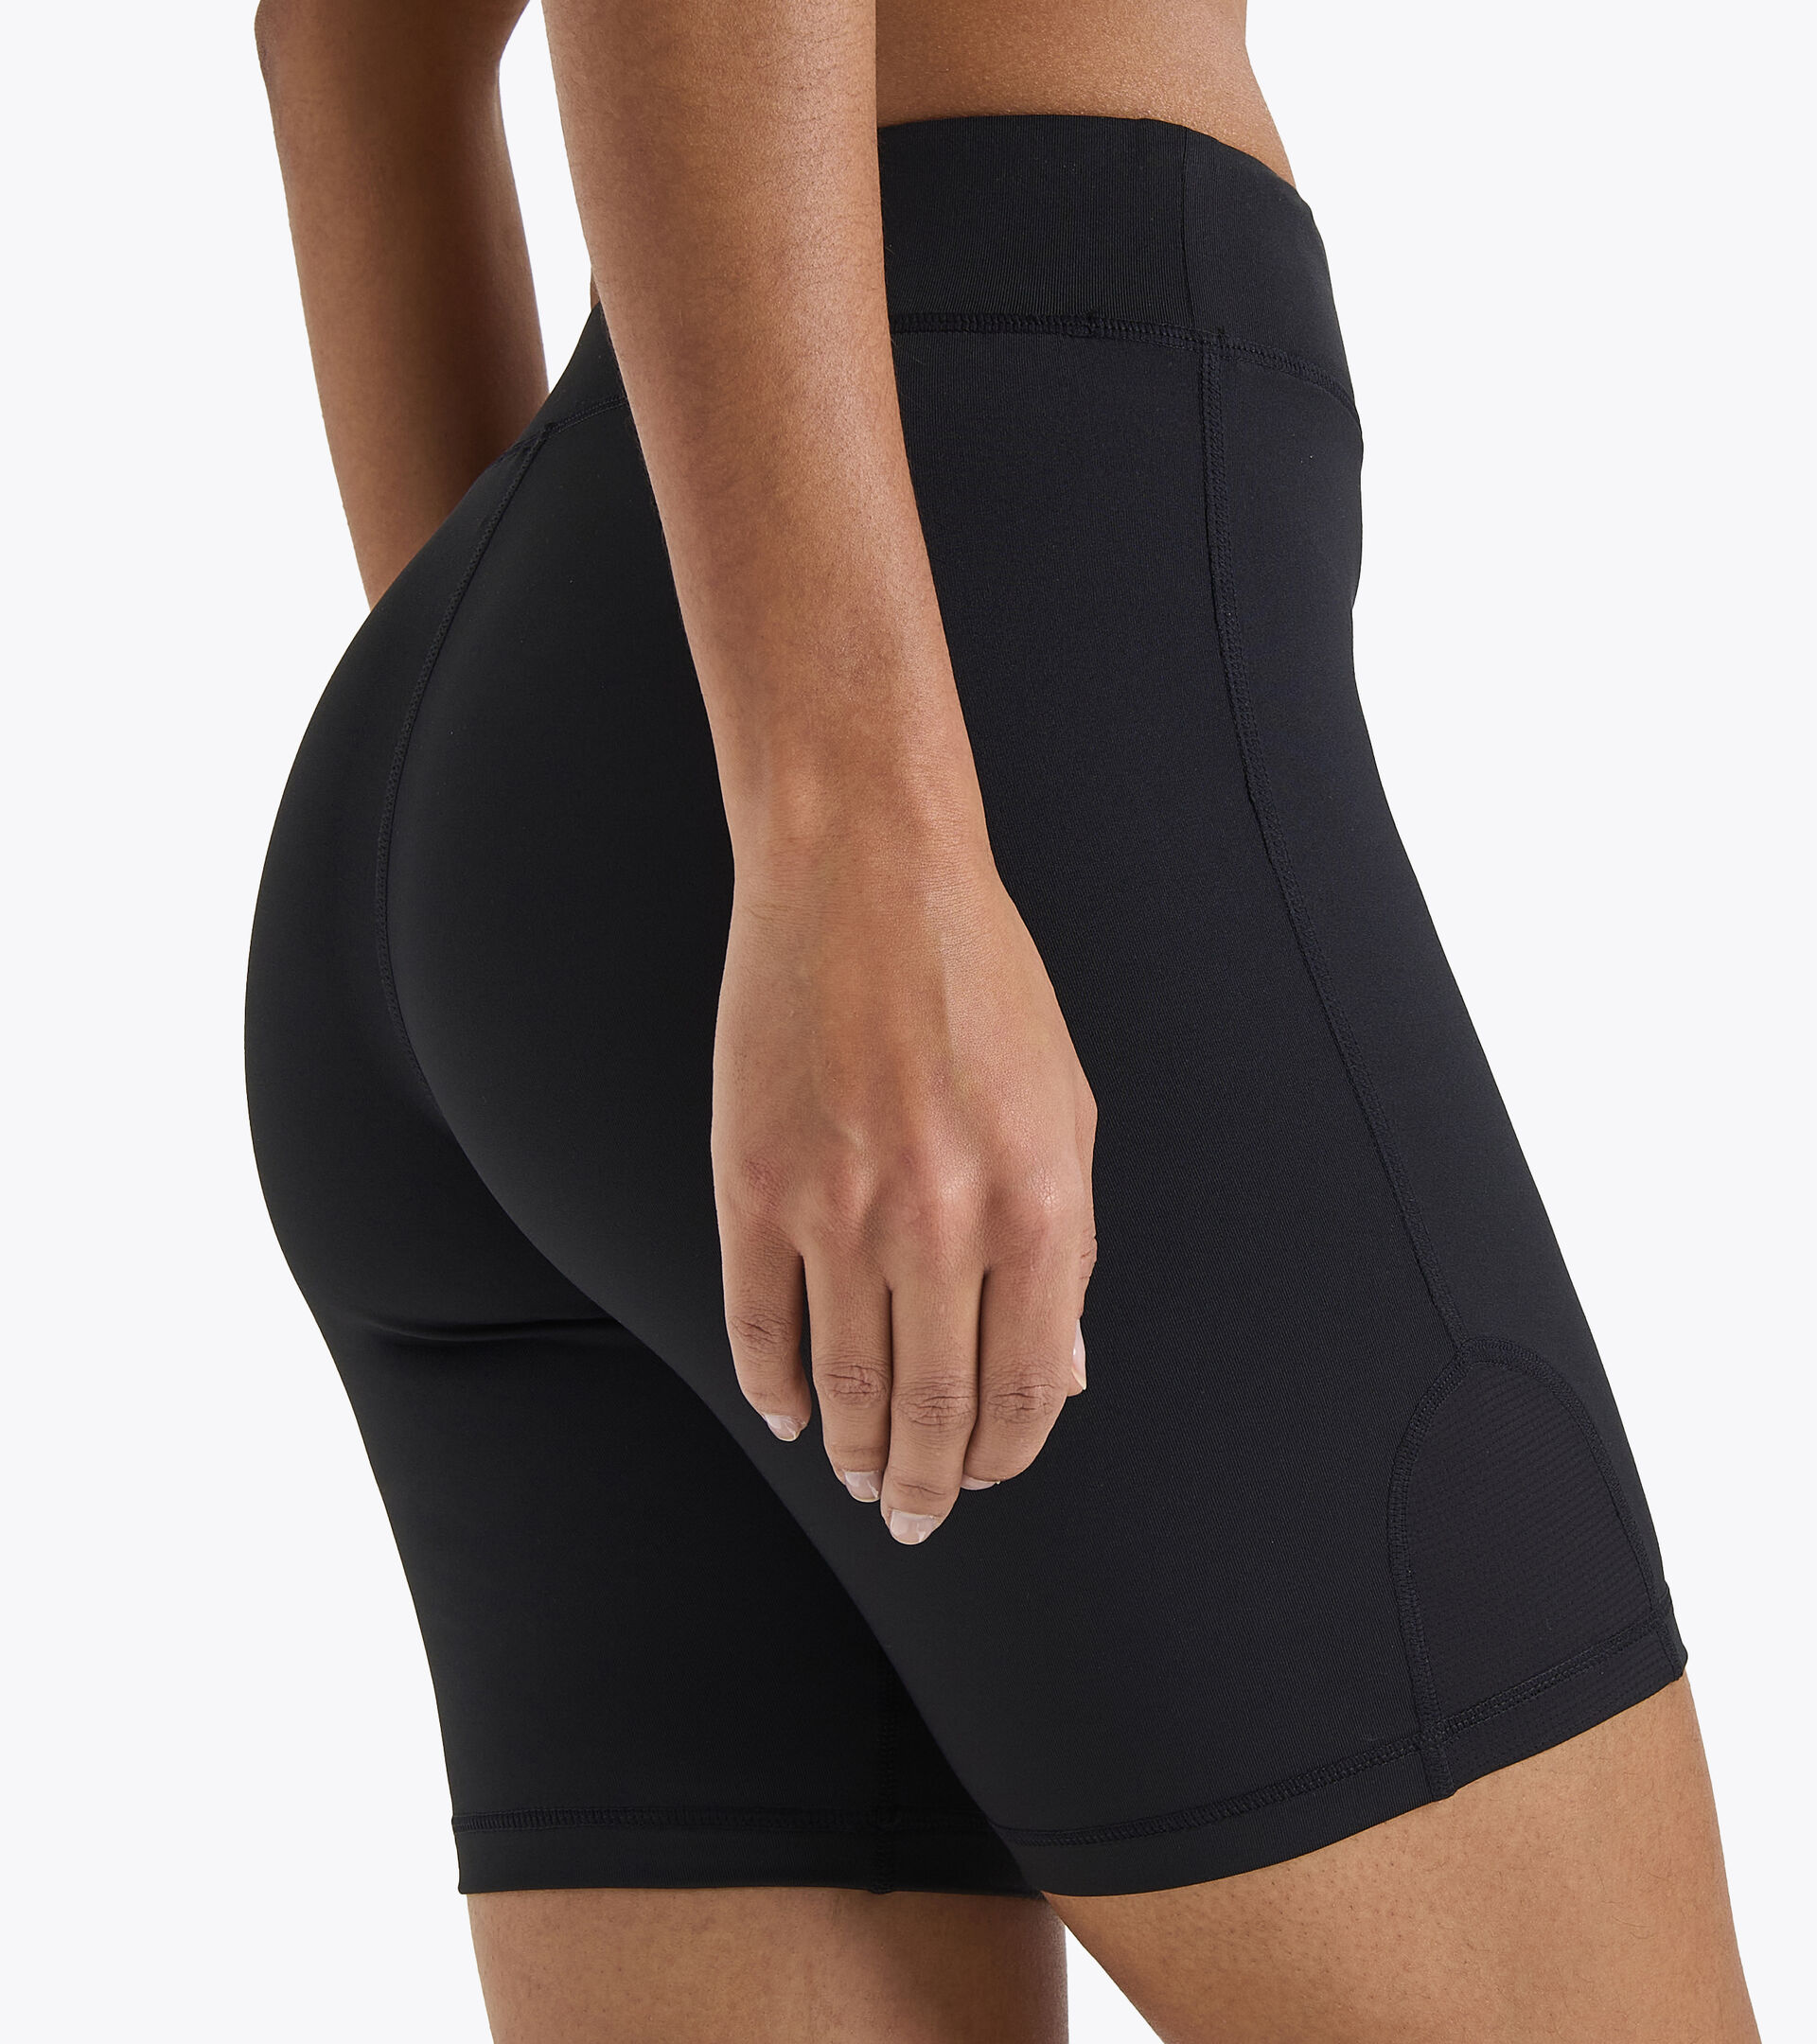 L. SHORT TIGHTS Running shorts - Women - Diadora Online Store FI